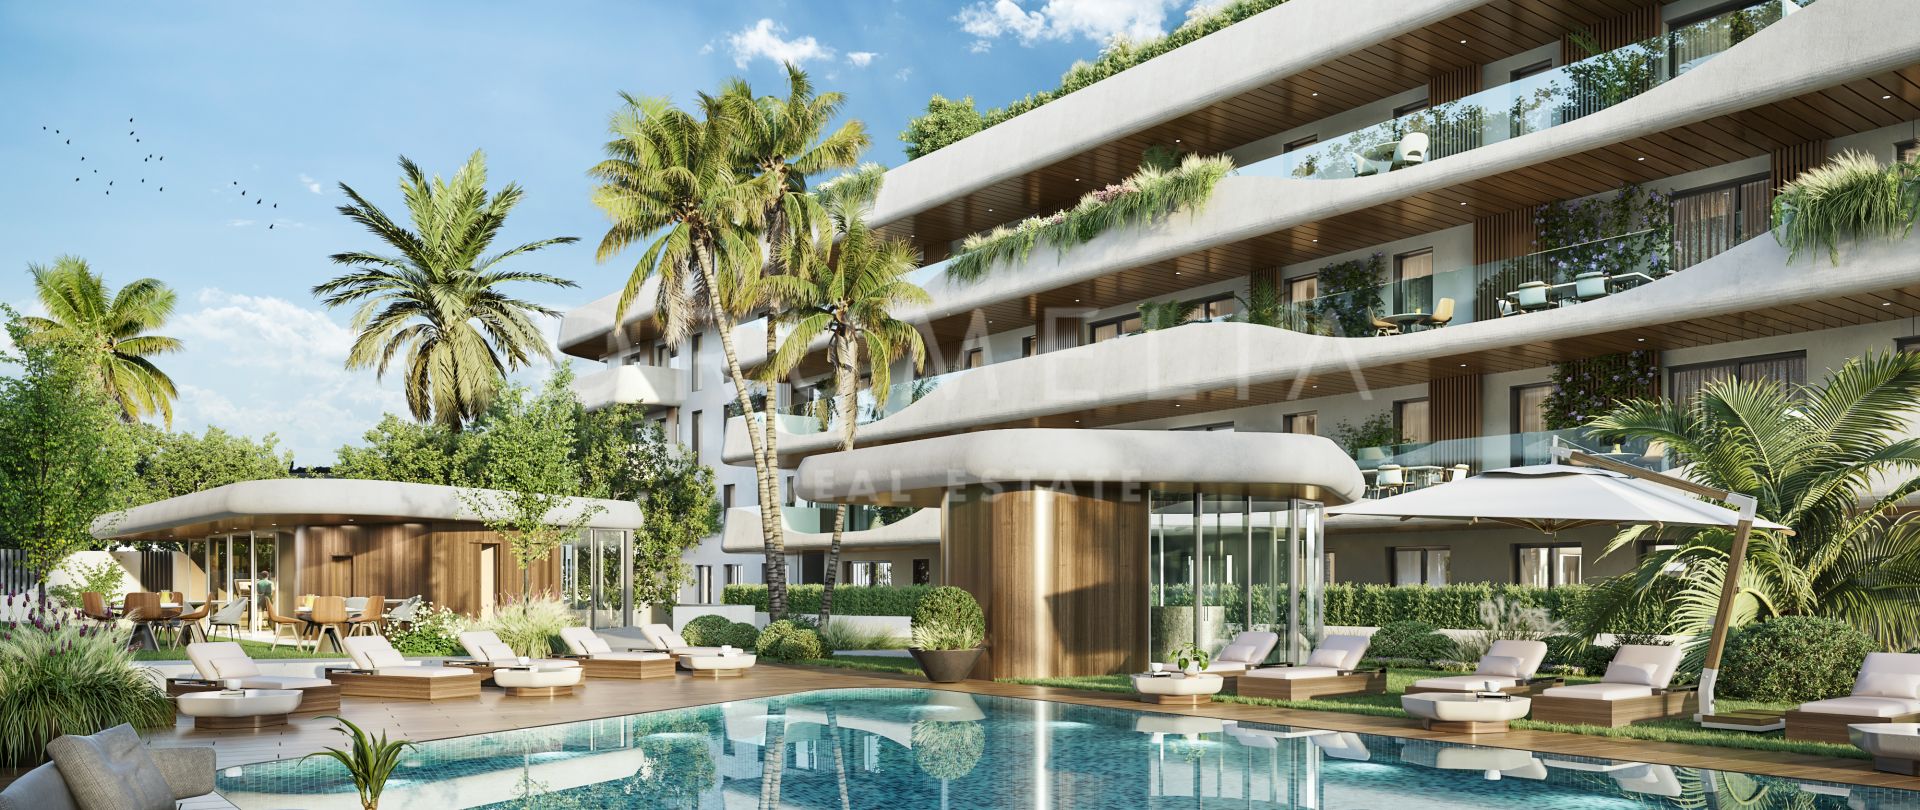 Fantastisk moderne luksusleilighet i et nytt, elegant boligkompleks i San Pedro de Alcantara, Marbella.